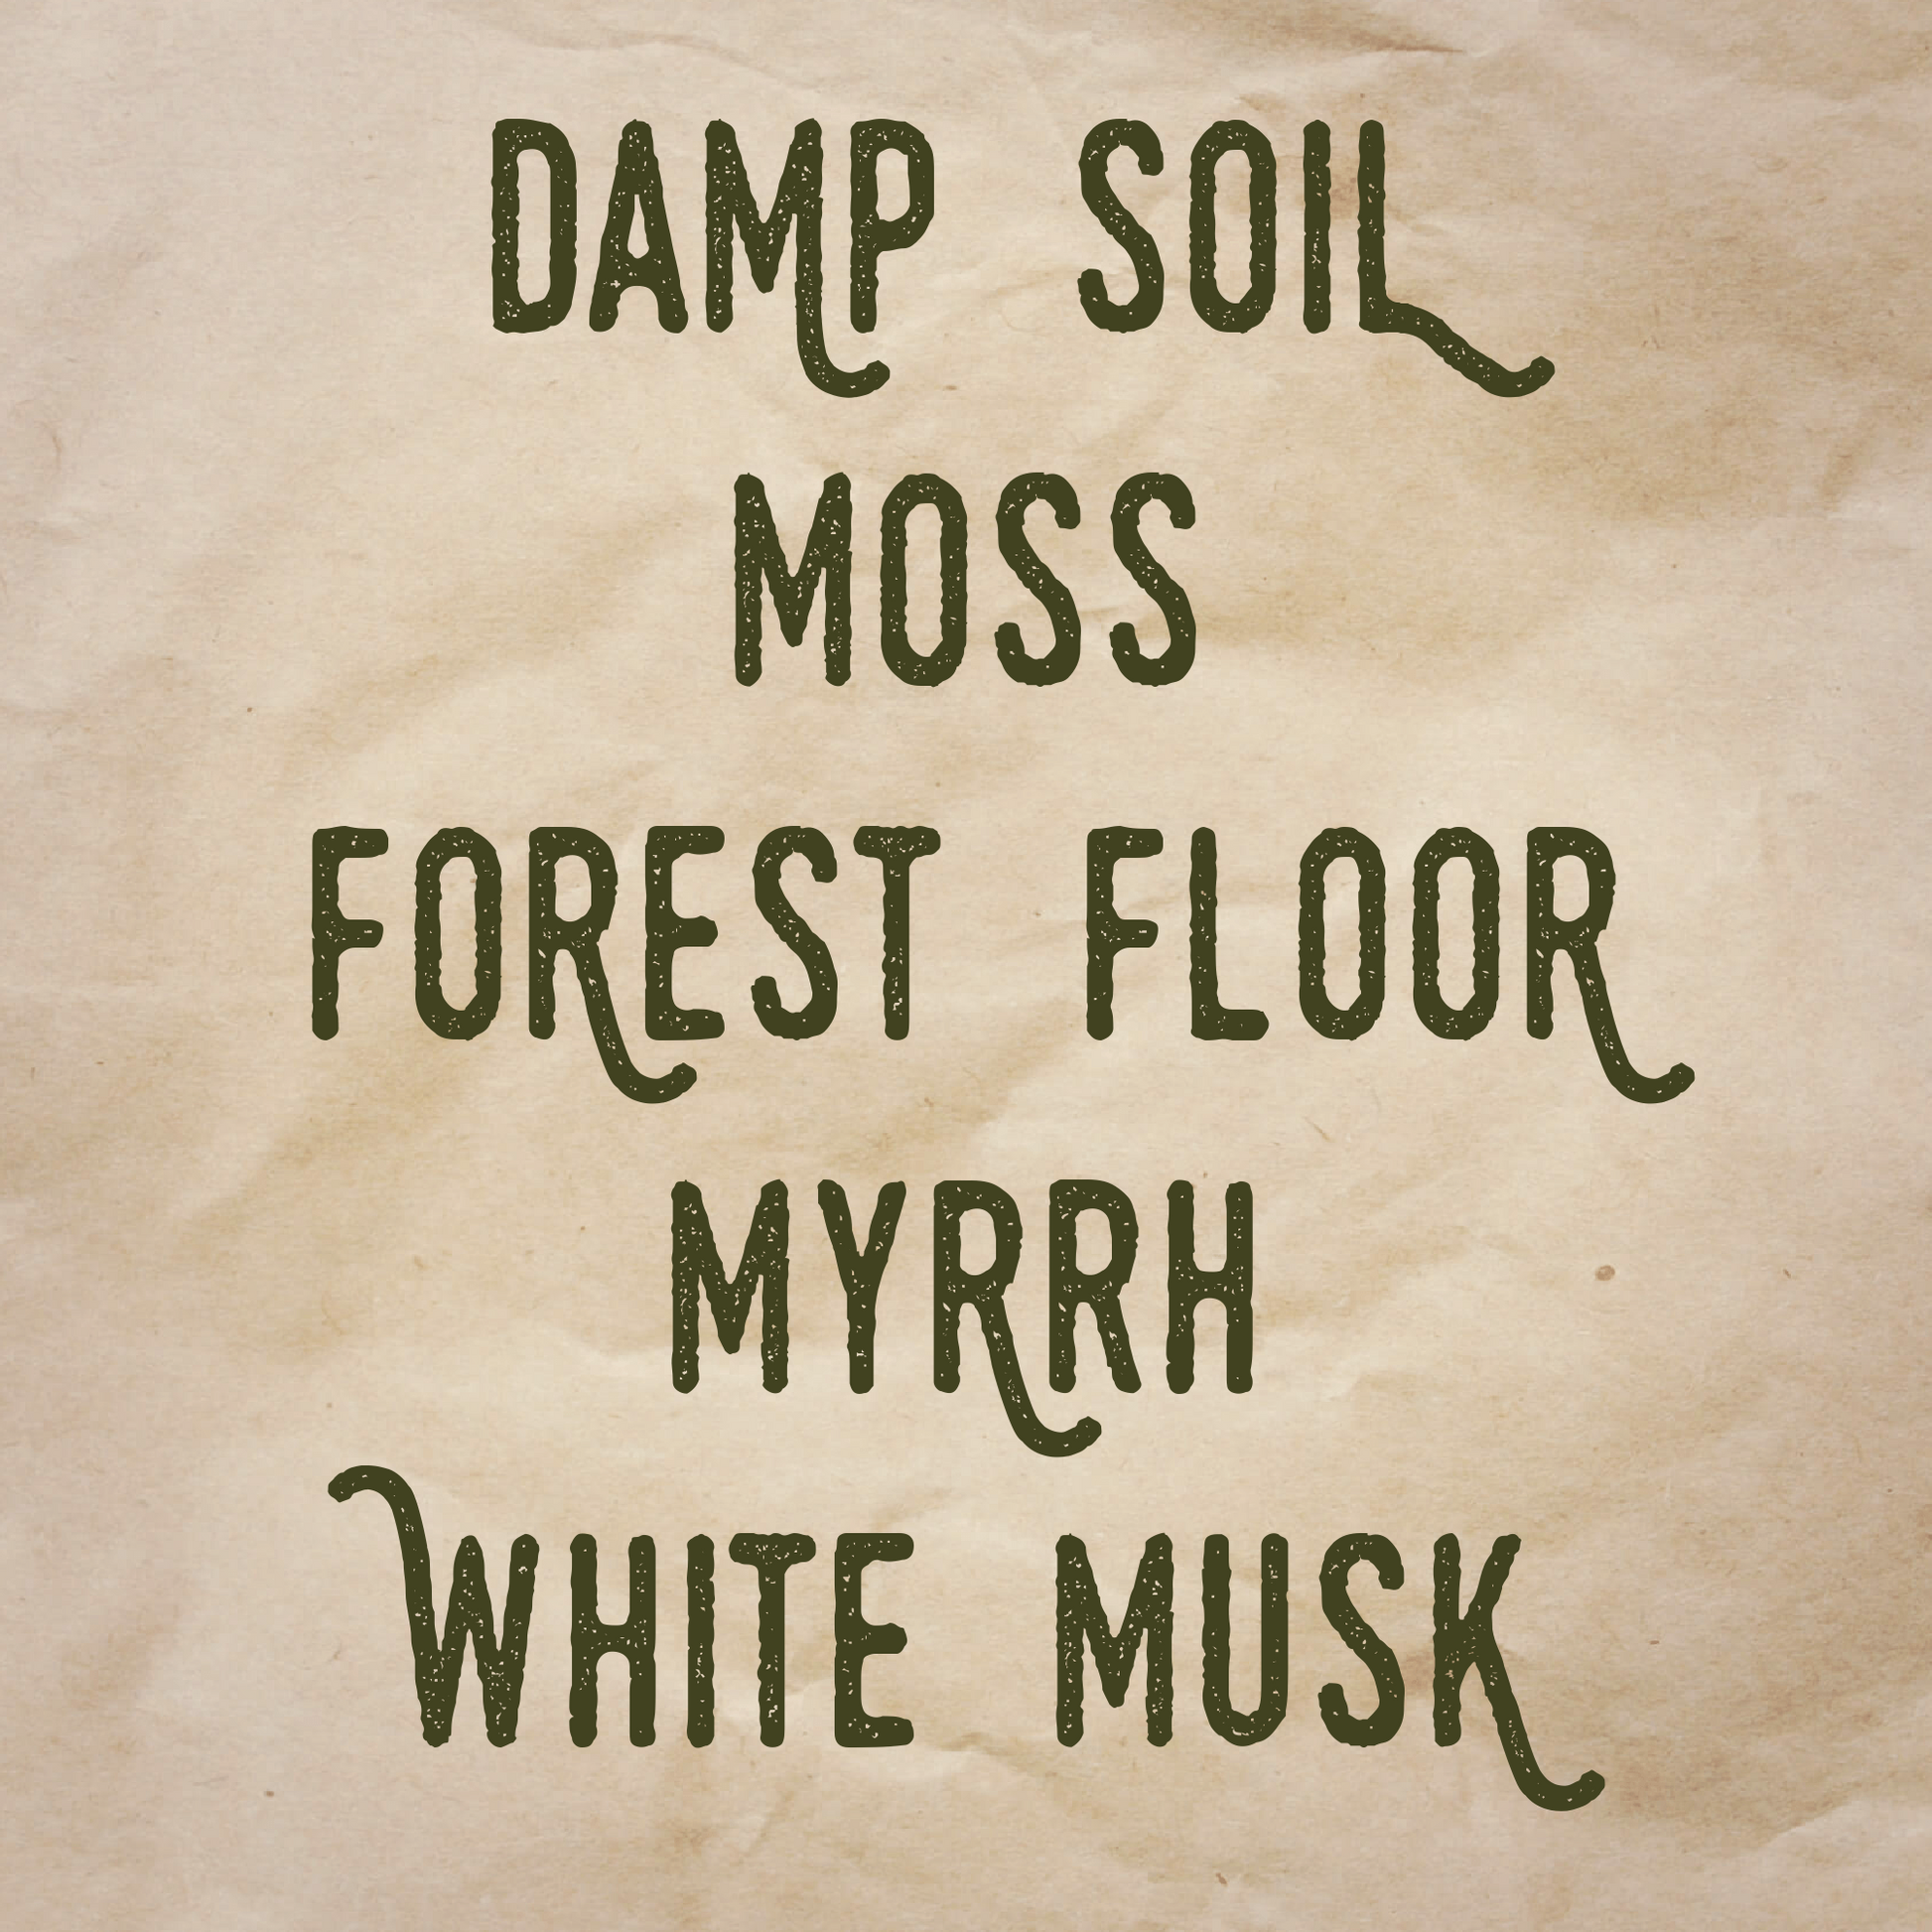 Bachelor's Grove scent notes: Damp soil, moss, forest floor, myrrh, and white musk.